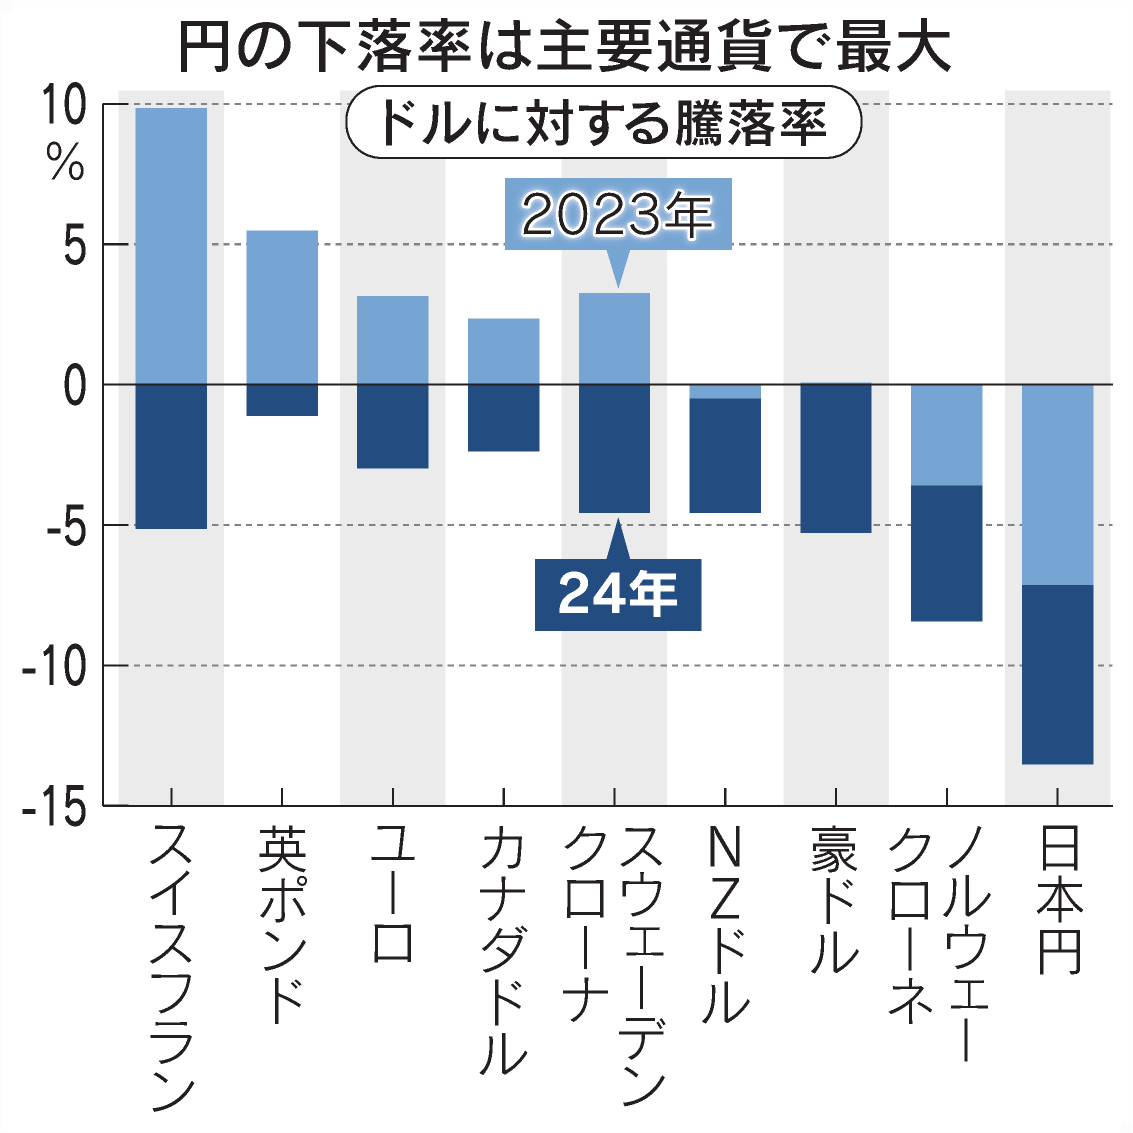 【祝🎉】日本円、ここ数年でアジア全ての通貨より価値が下がる  [469534301]\n_1